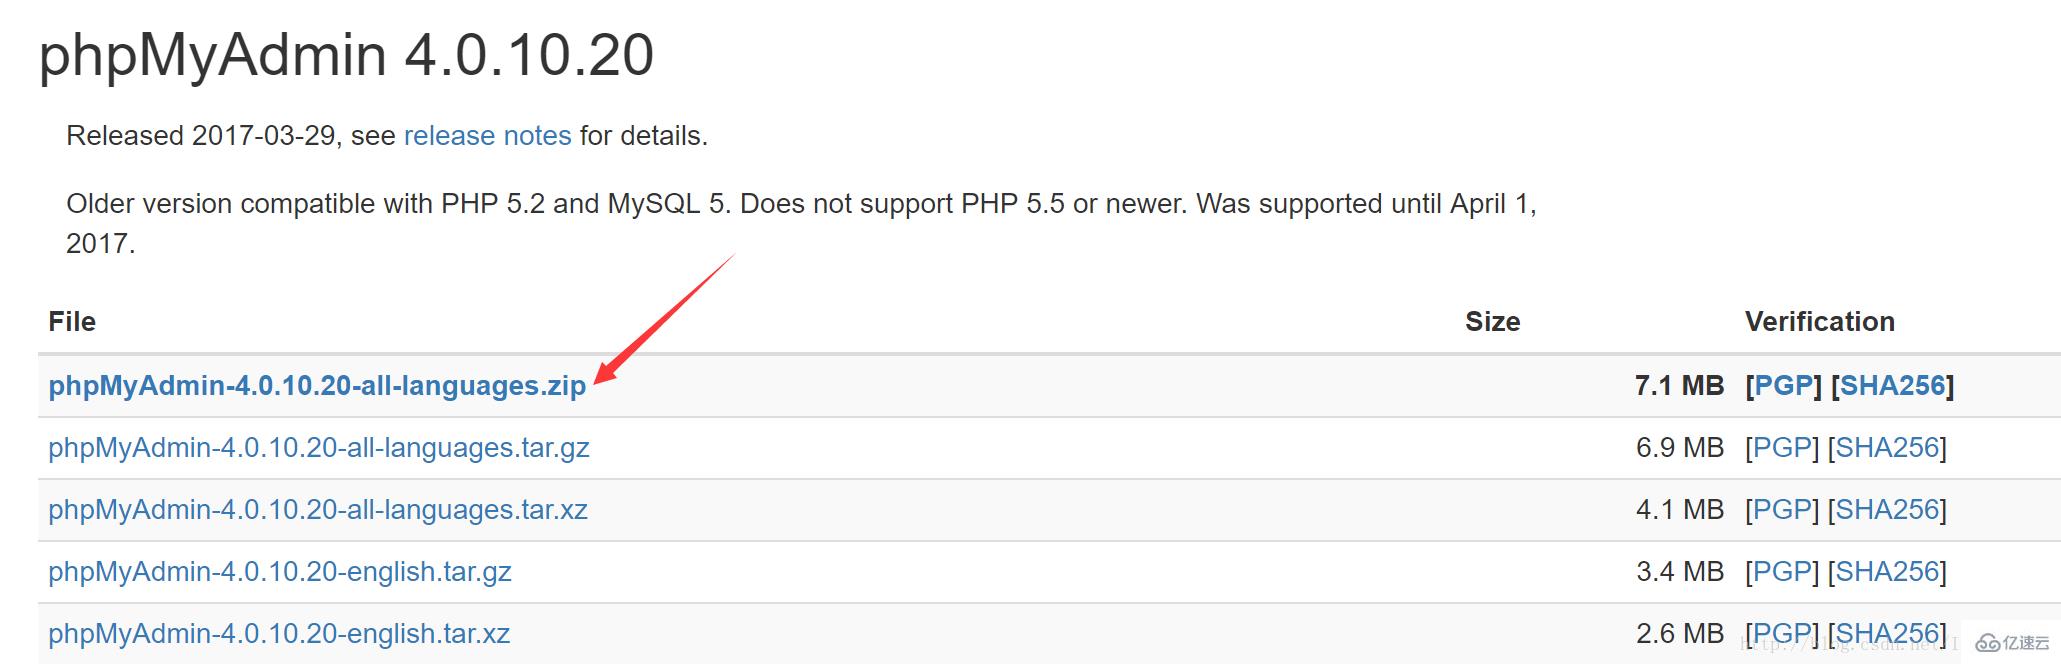 安装完PHPStudy以后打开phpMyAdmin显示404错误代码怎么办